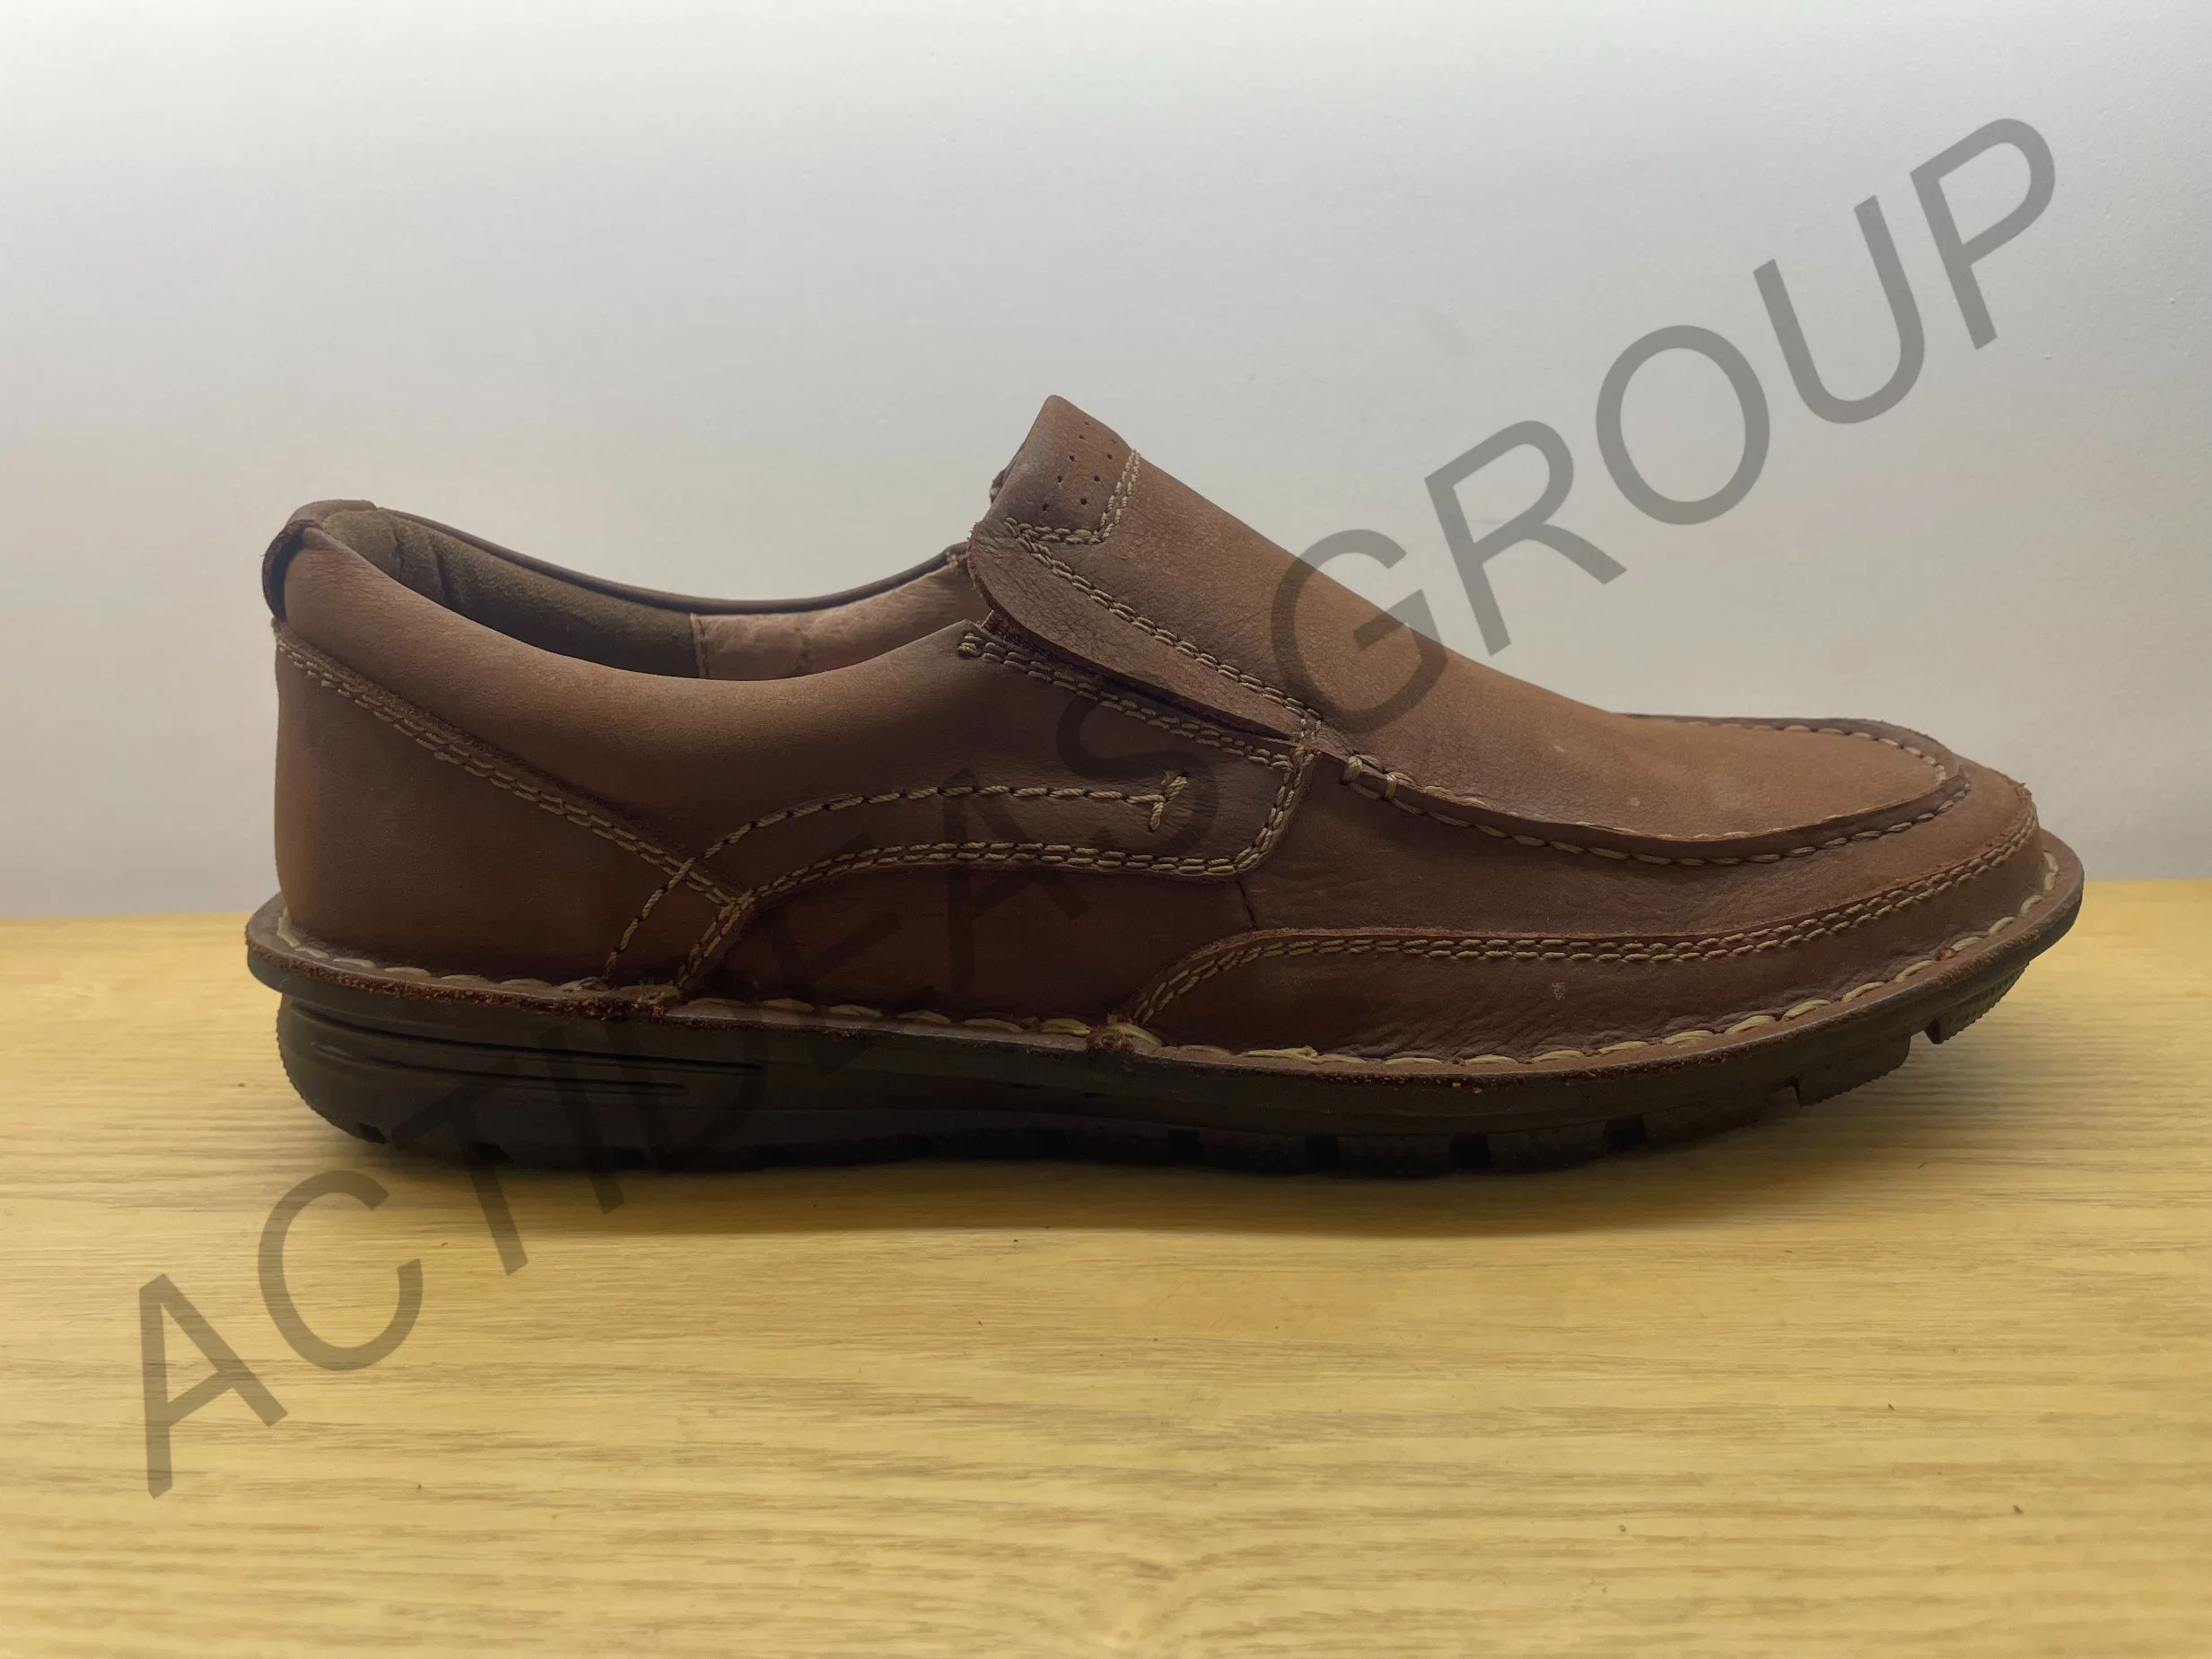 Трусы на моде Круглый носок Leisure Loafers кожаные лодка обувь Обувь для мужчин в стиле ходьбы езда Loafer дешево